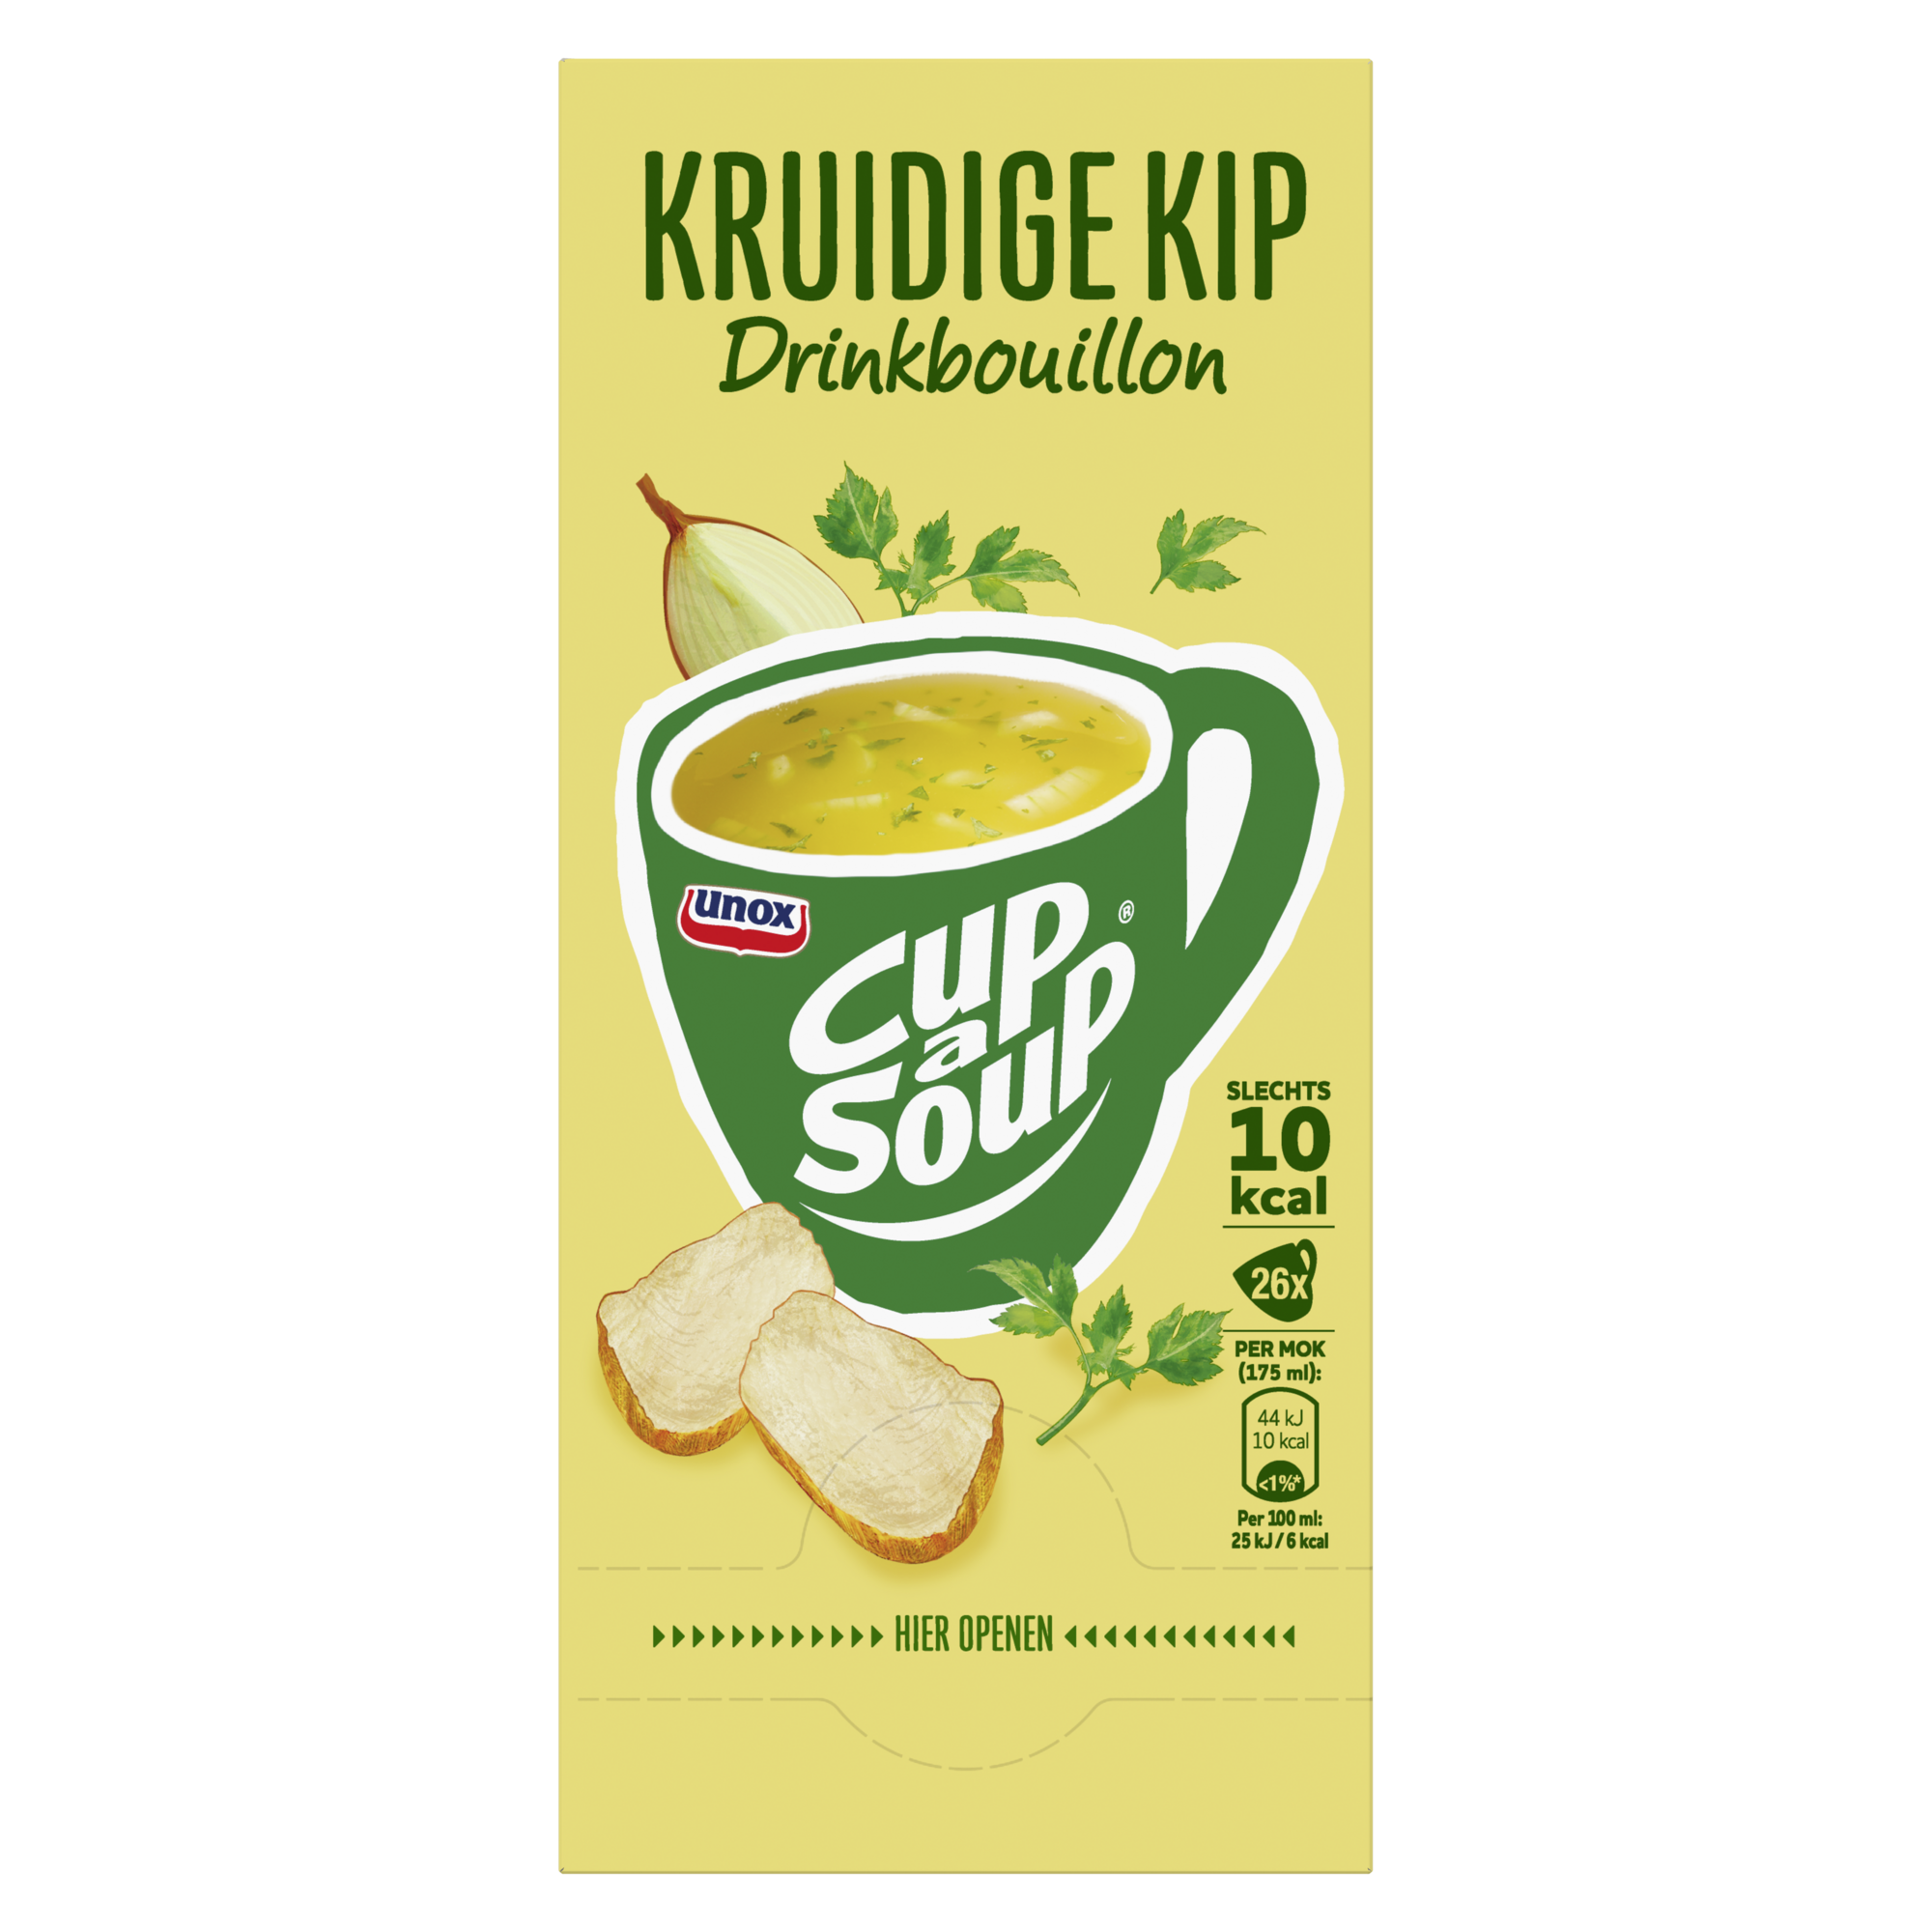 25129 Drinkbouillon kruidige kip cup-a-soup 1x26 zak